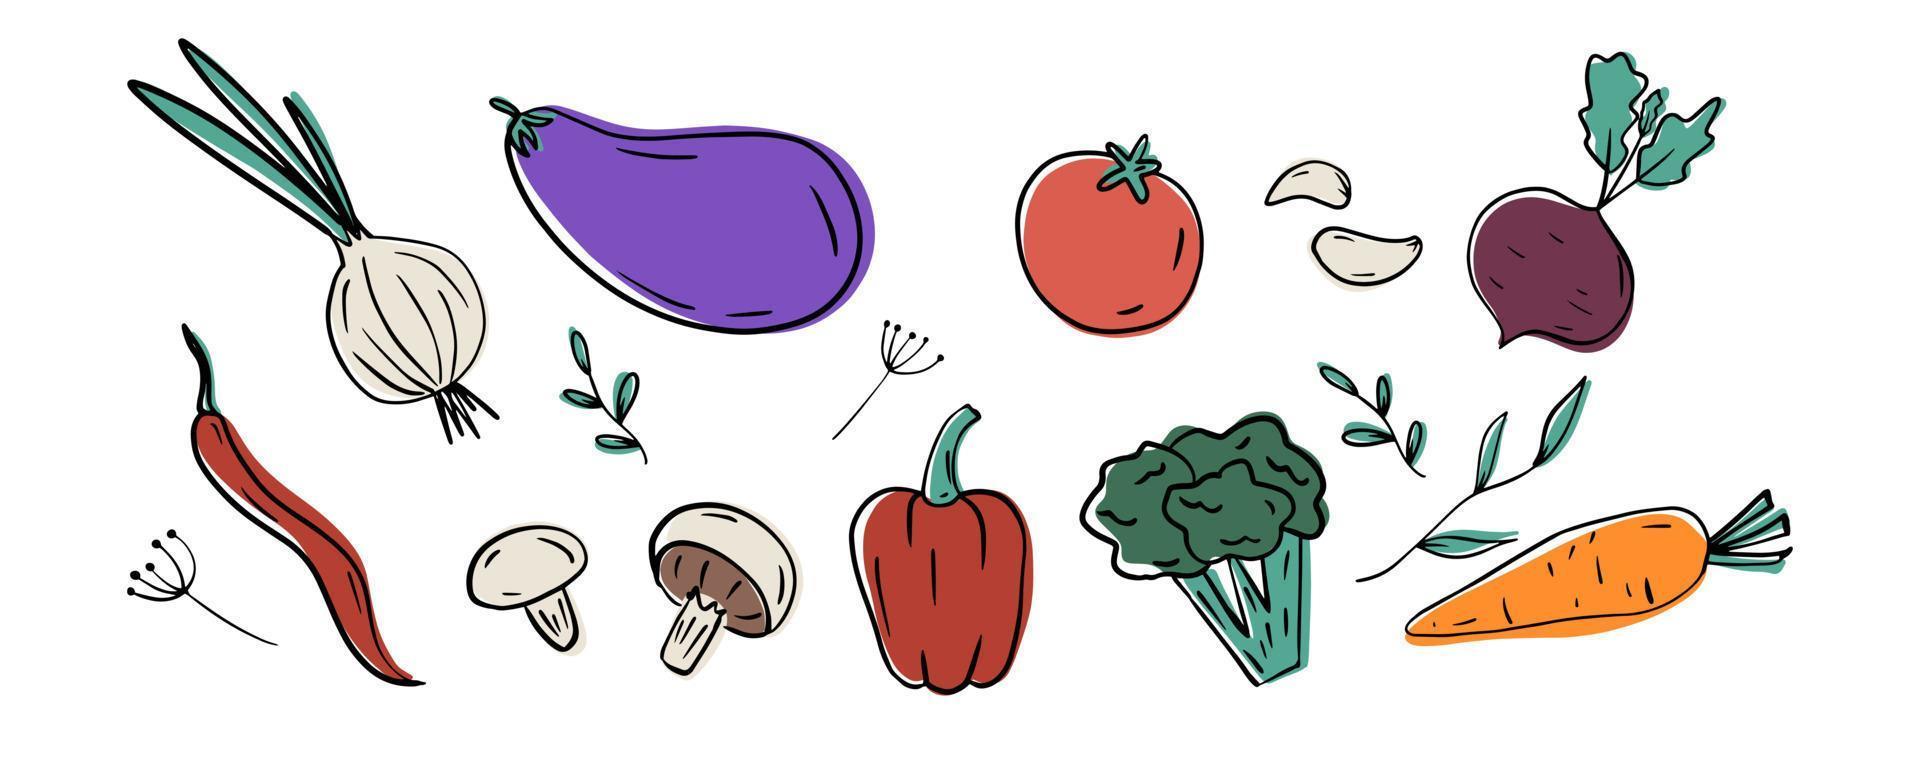 grönsaker set. handritad lök, vitlök, broccoli, tomat, paprika, morötter, svamp, rödbetor, aubergine, paprika, dill. vektor illustration